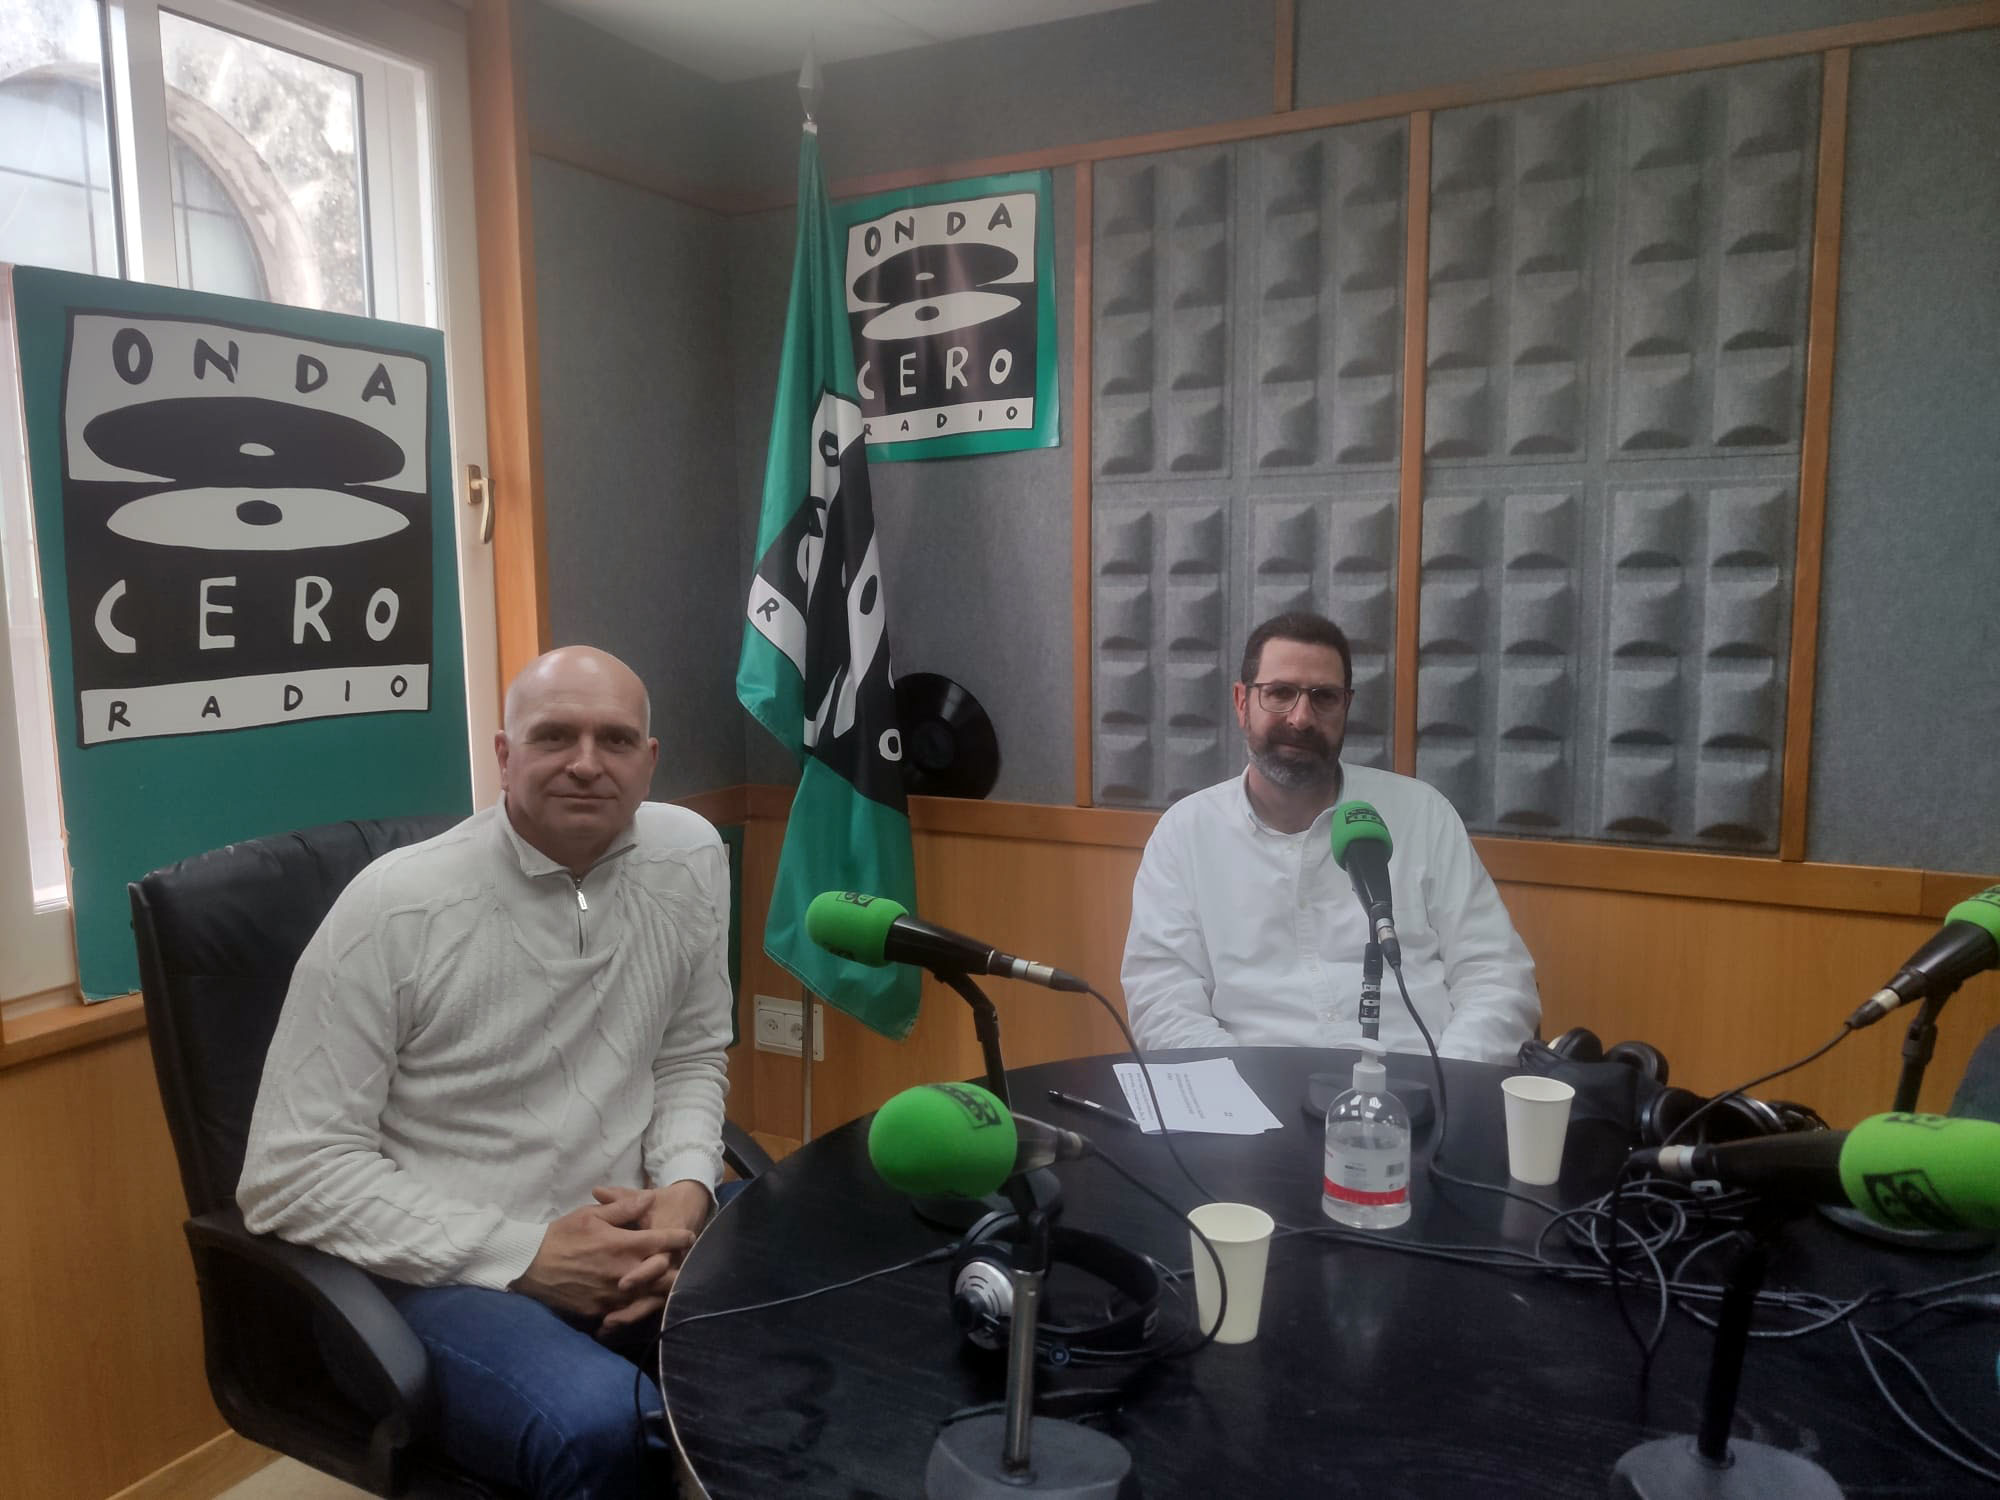 Décimo programa de radio en Onda Cero Menorca con Miquel Tutzó